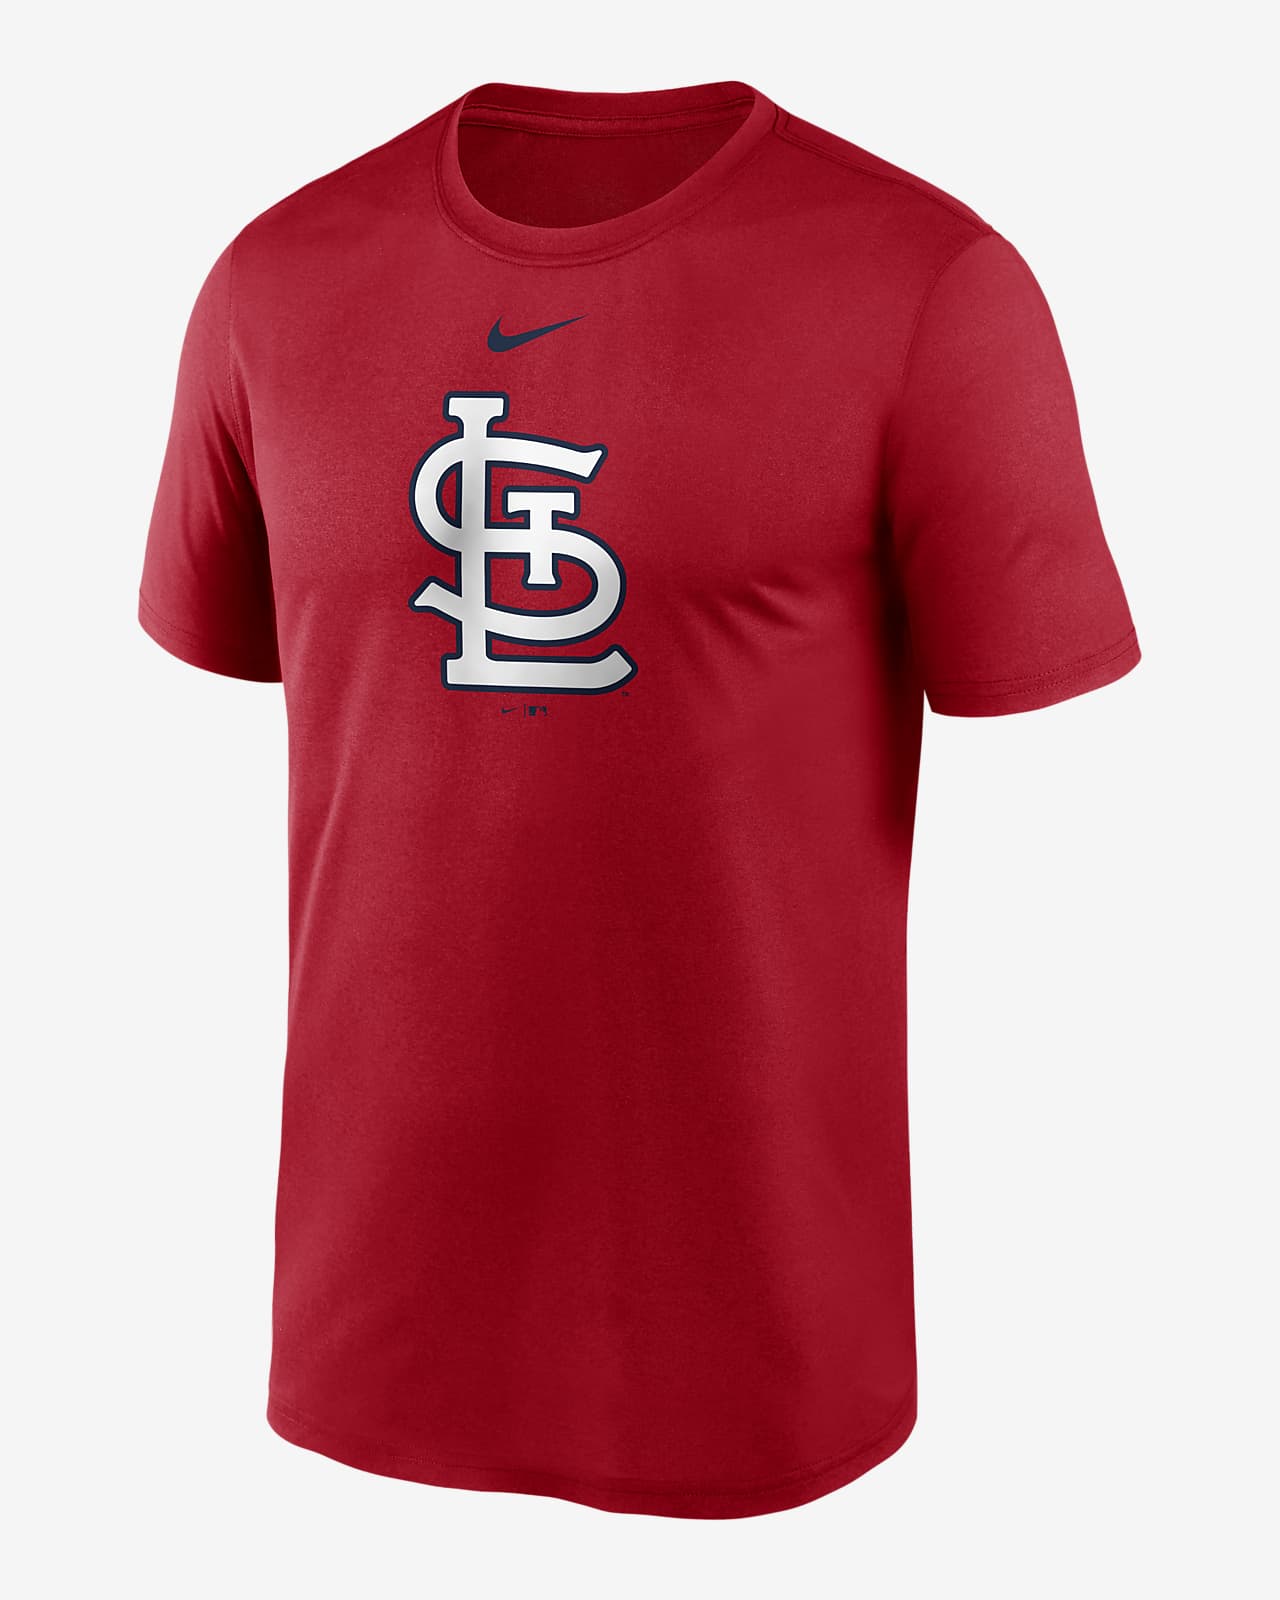 Men's Nike Light Blue St. Louis Cardinals Team Slider Tri-Blend Long Sleeve  T-Shirt